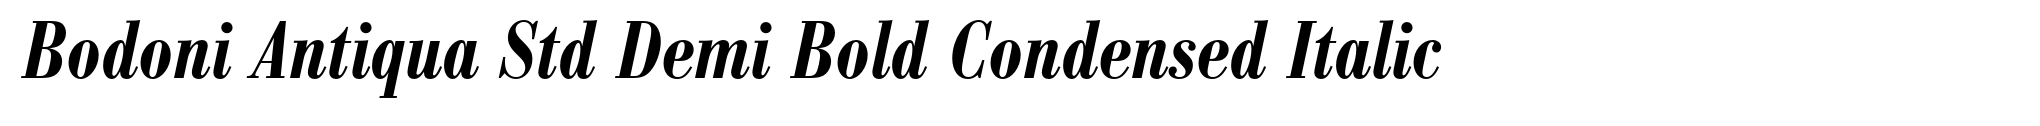 Bodoni Antiqua Std Demi Bold Condensed Italic image